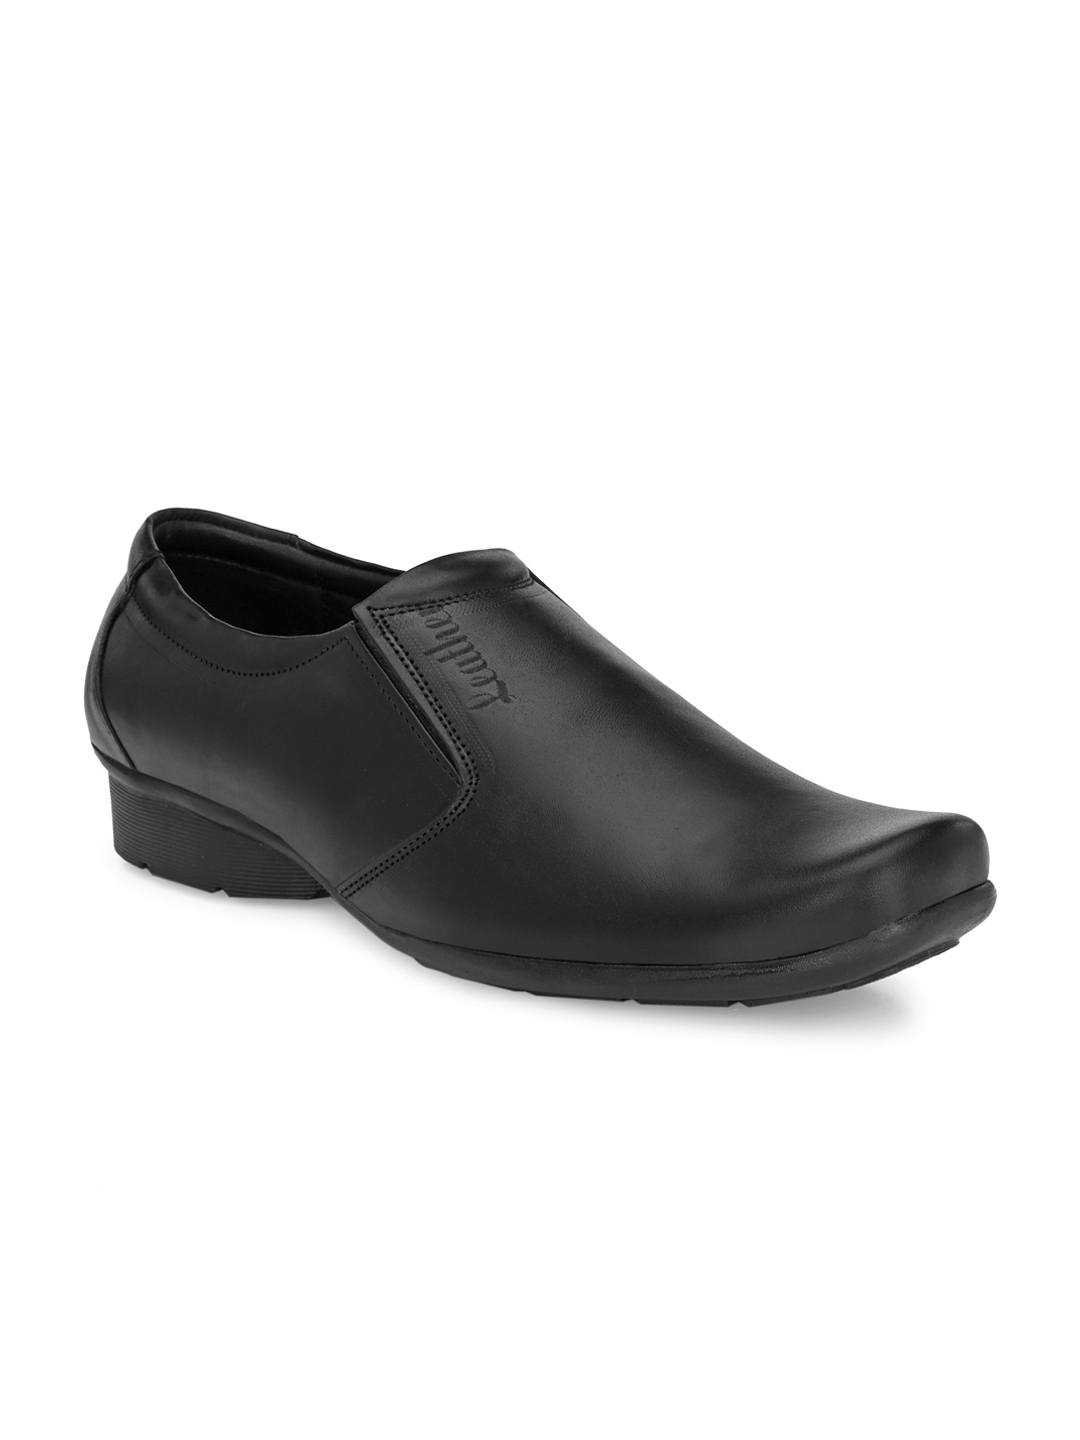 Buy John Karsun Men Black Solid Leather Formal Slip Ons - Formal Shoes ...